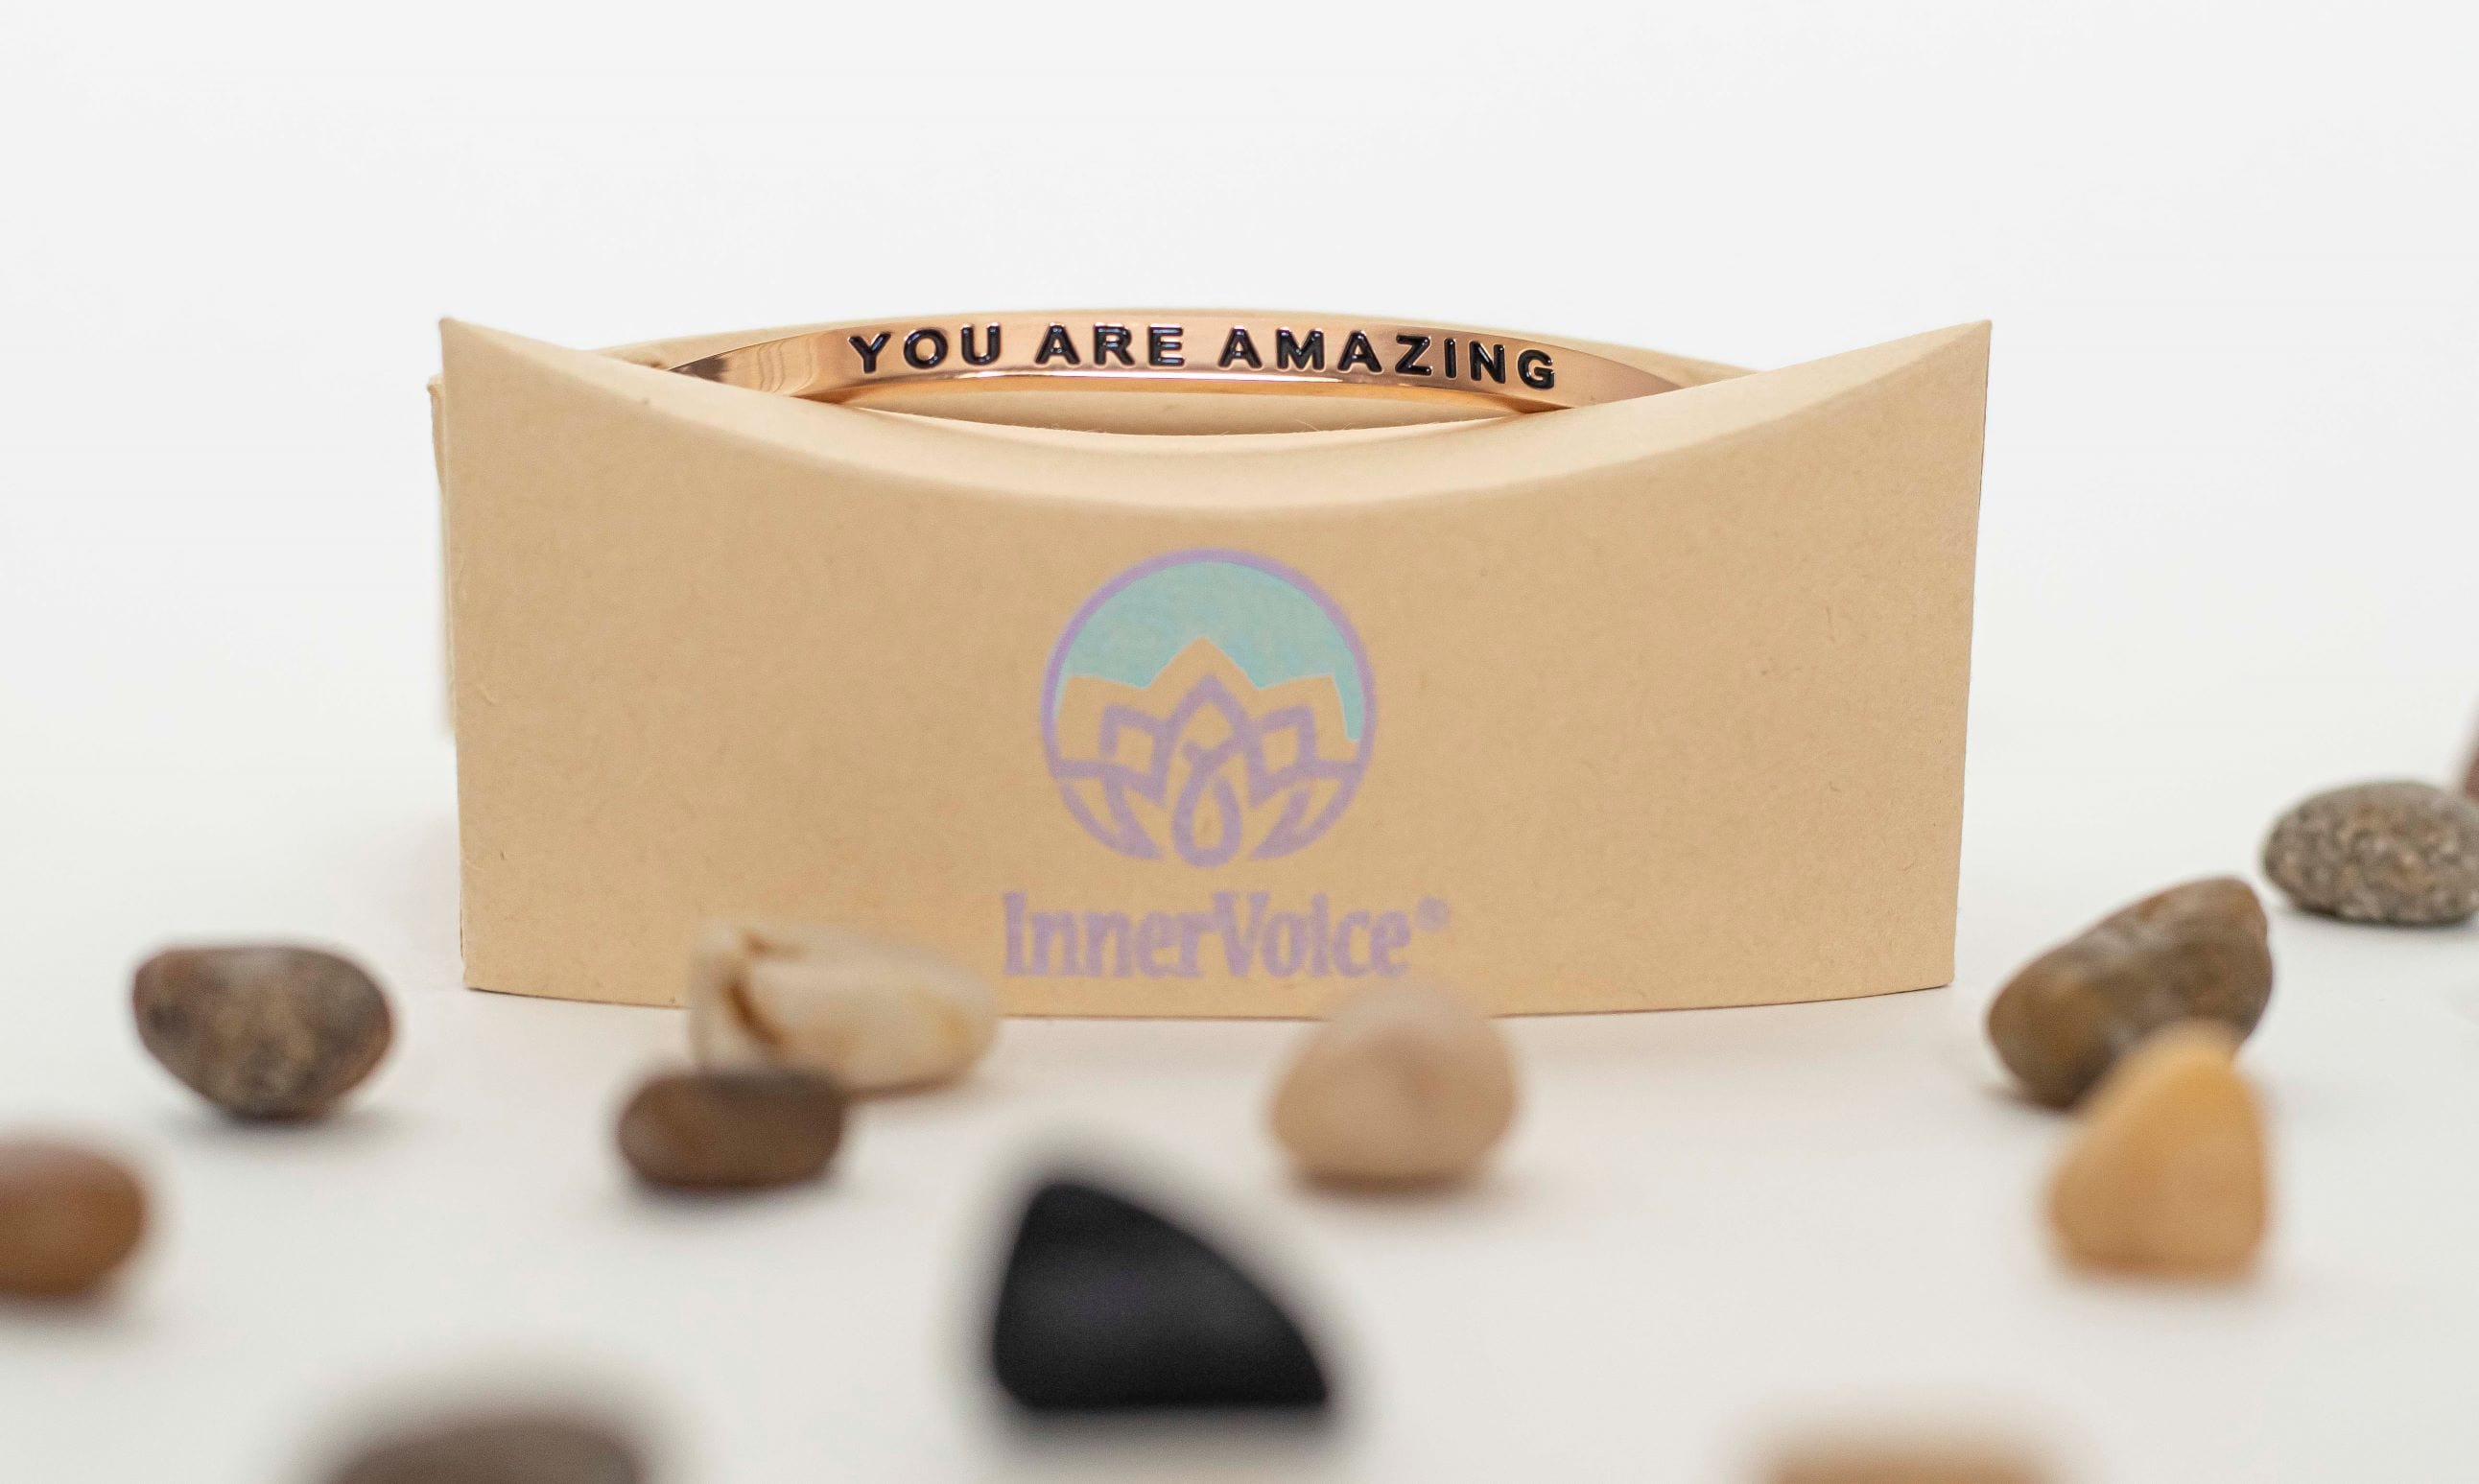 Grace Under Pressure: InnerVoice Bracelet